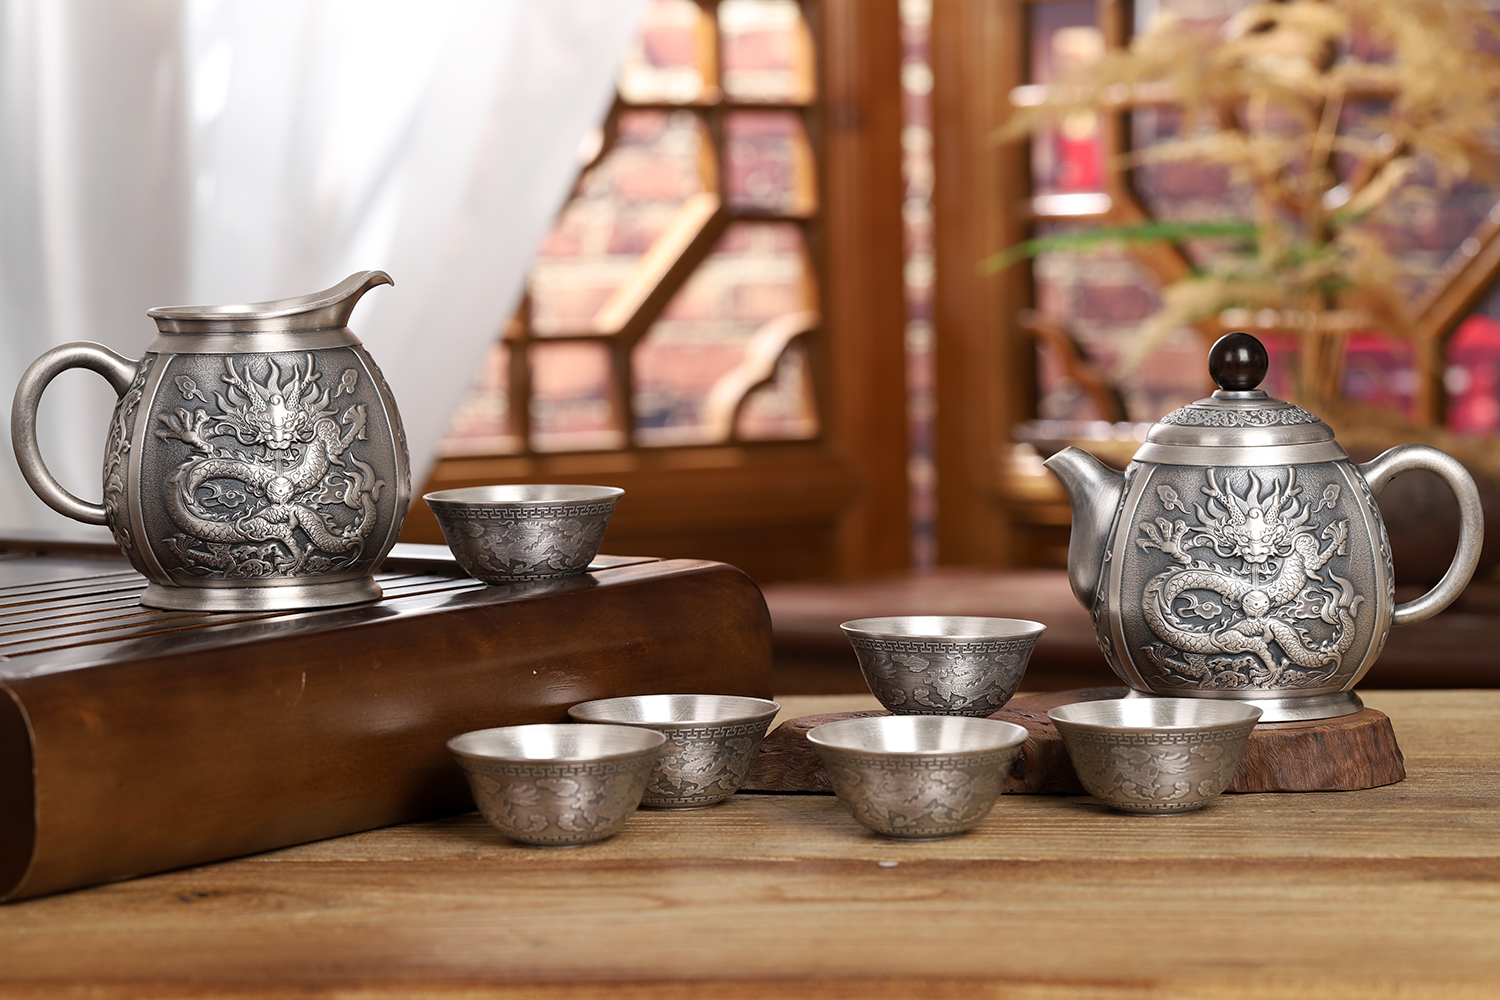 尚壶坊茶器官网_提供经典银壶、紫砂壶茶具，传承非物质文化遗产